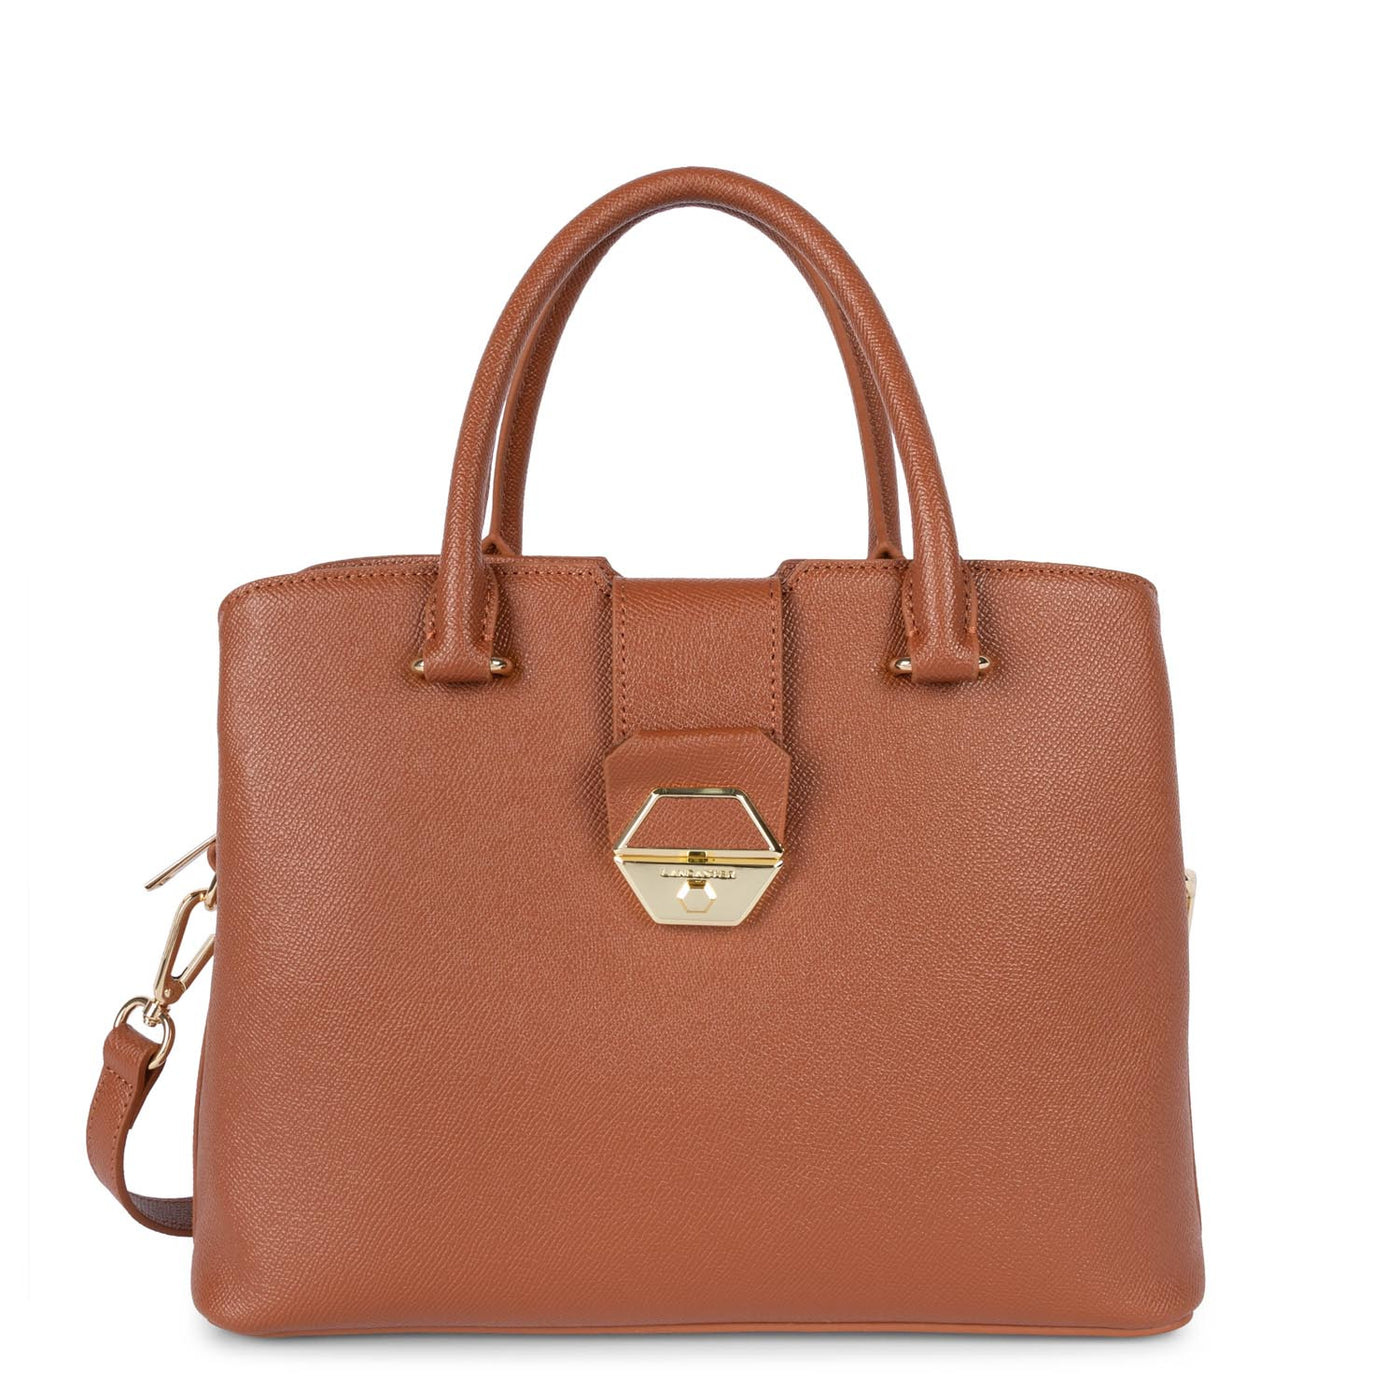 handbag - delphino #couleur_cognac